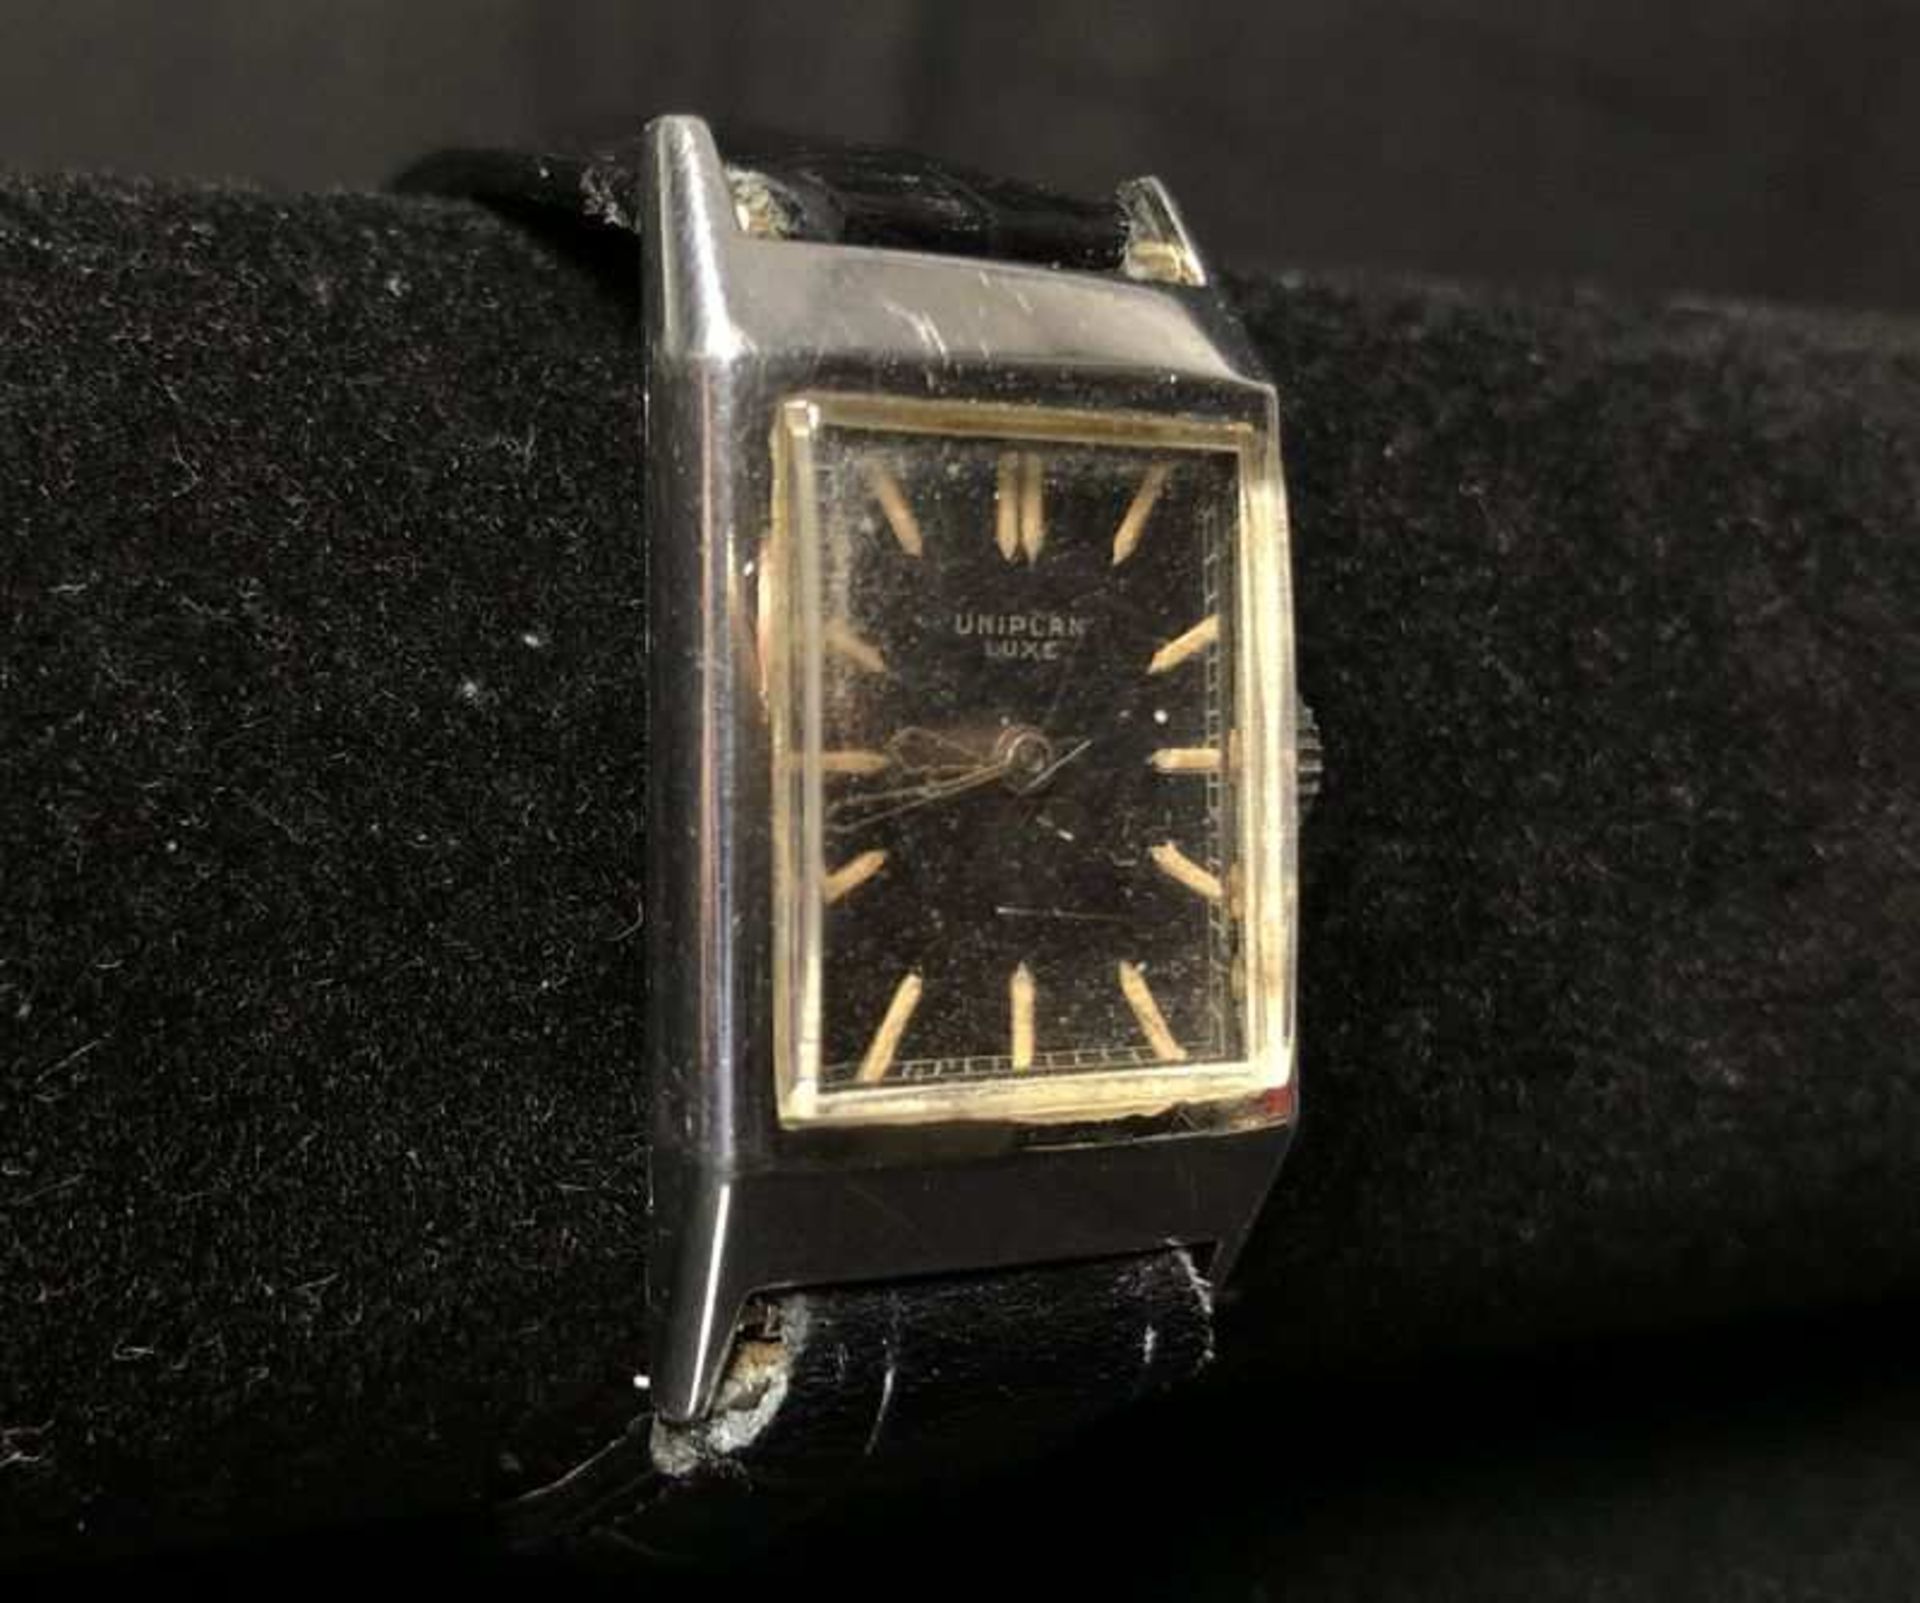 UNIPLAN LUXE, vers 1932, bracelet montre cadran noir signé UNIPLAN LUXE, mouvement mécanique 17